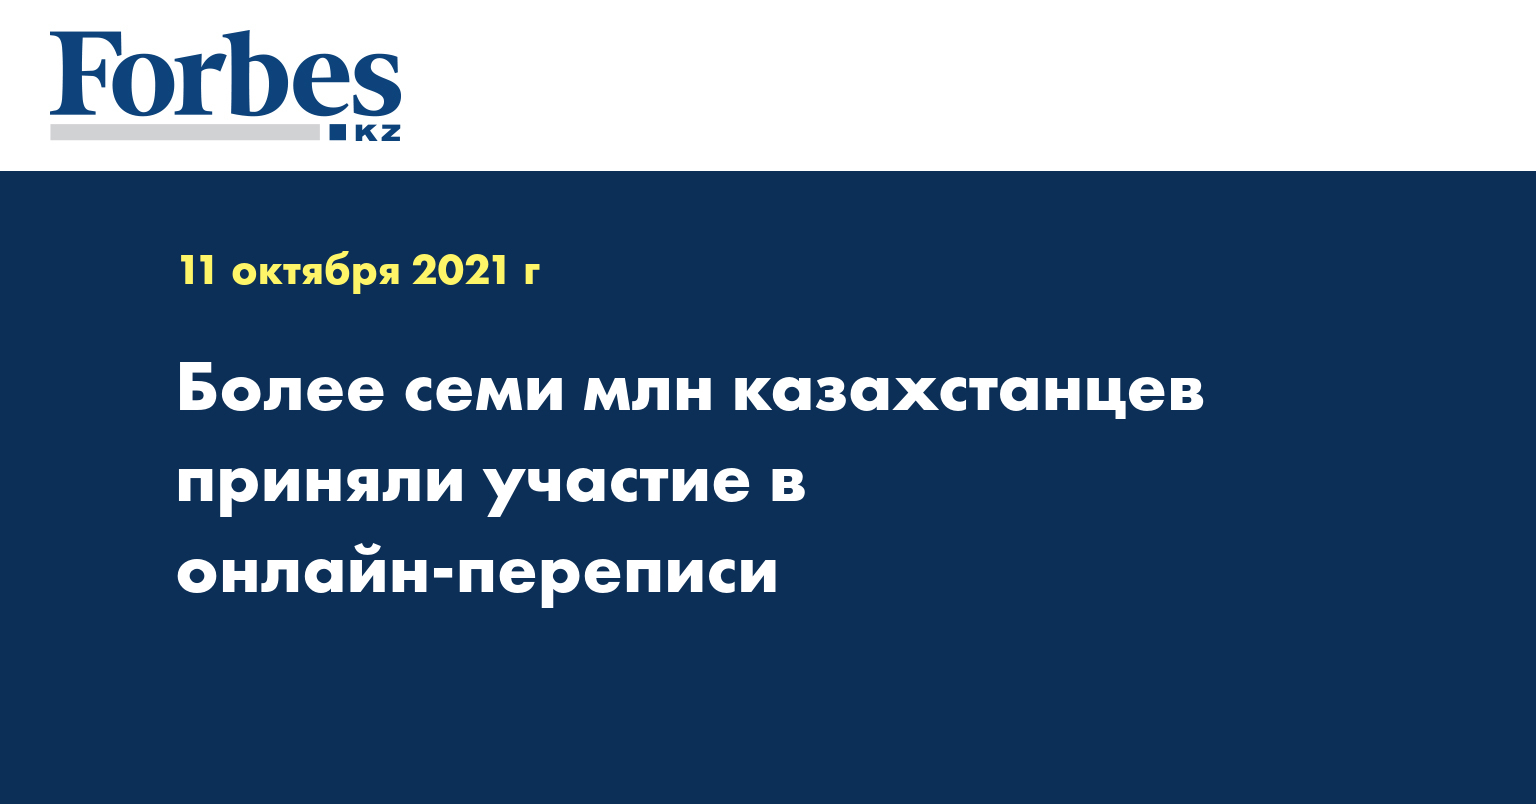  Более семи млн казахстанцев приняли участие в онлайн-переписи